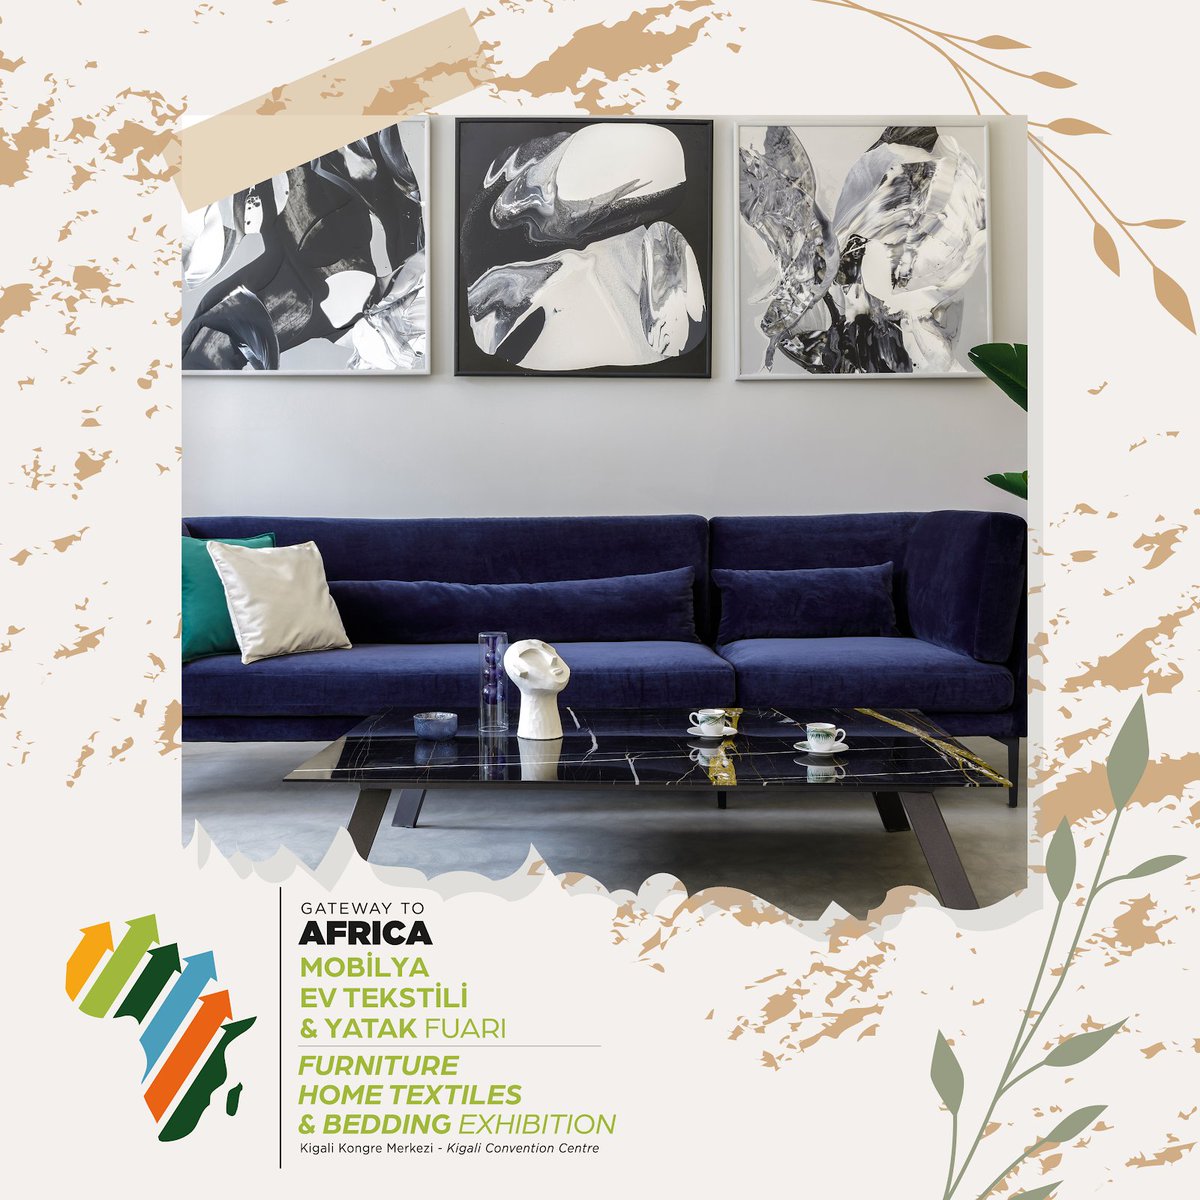 Afrika ile ticaret ilişkileri kurmak isteyen Türk üreticiler için kaçırılmayacak bir fırsat: Gateway to Africa Furniture Fuarı! Ön kayıt formu için tıklayın. bit.ly/3BEEQQK 📅 03-05 Ekim 2023 📍 Kigali Kongre ve Sergi Sarayı (KCEV)